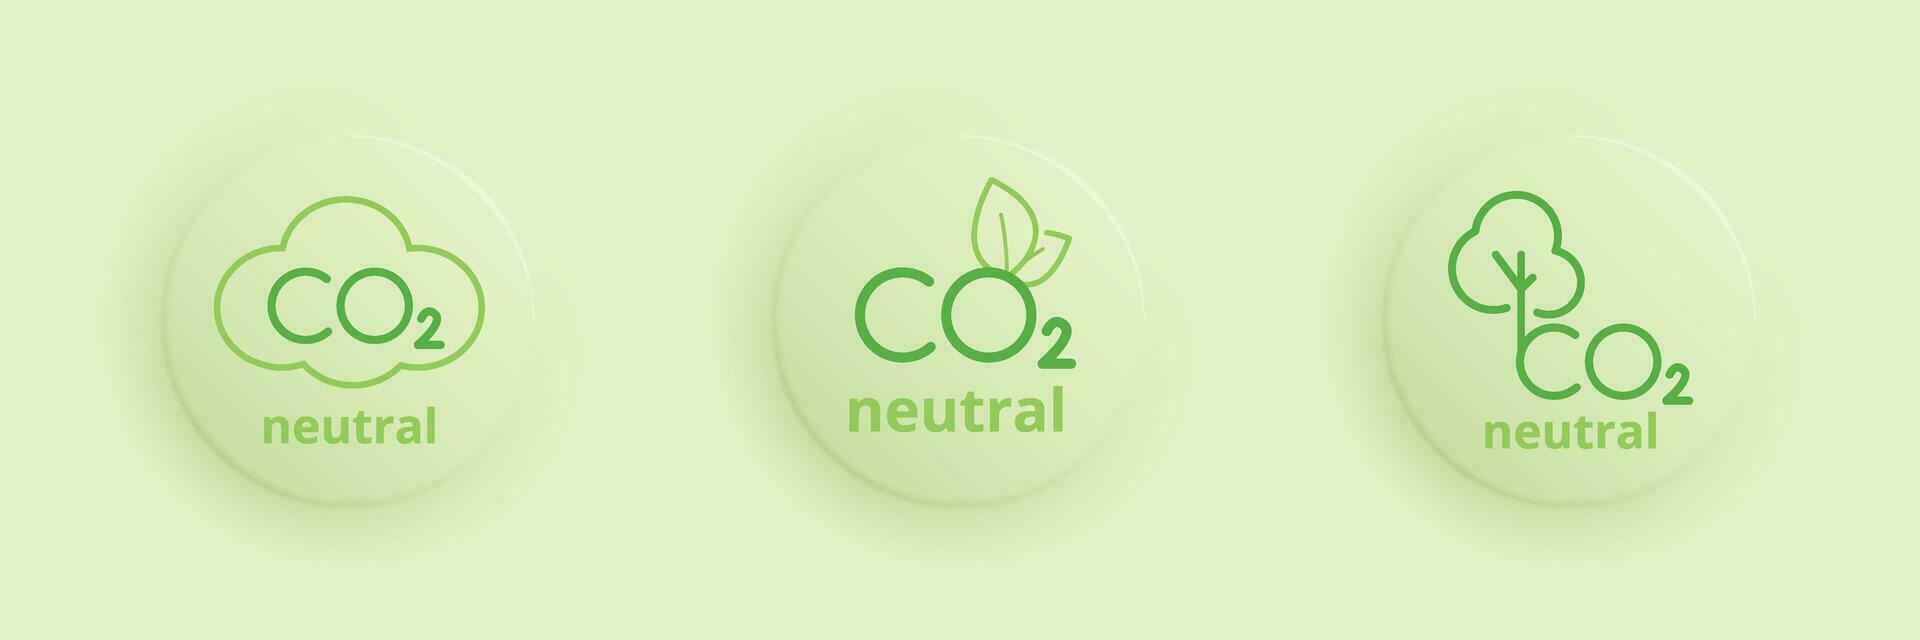 drie ronde logo neutrale co2. koolstof voetafdruk, niet nul, koolstof vermindering concept. vector illustratie